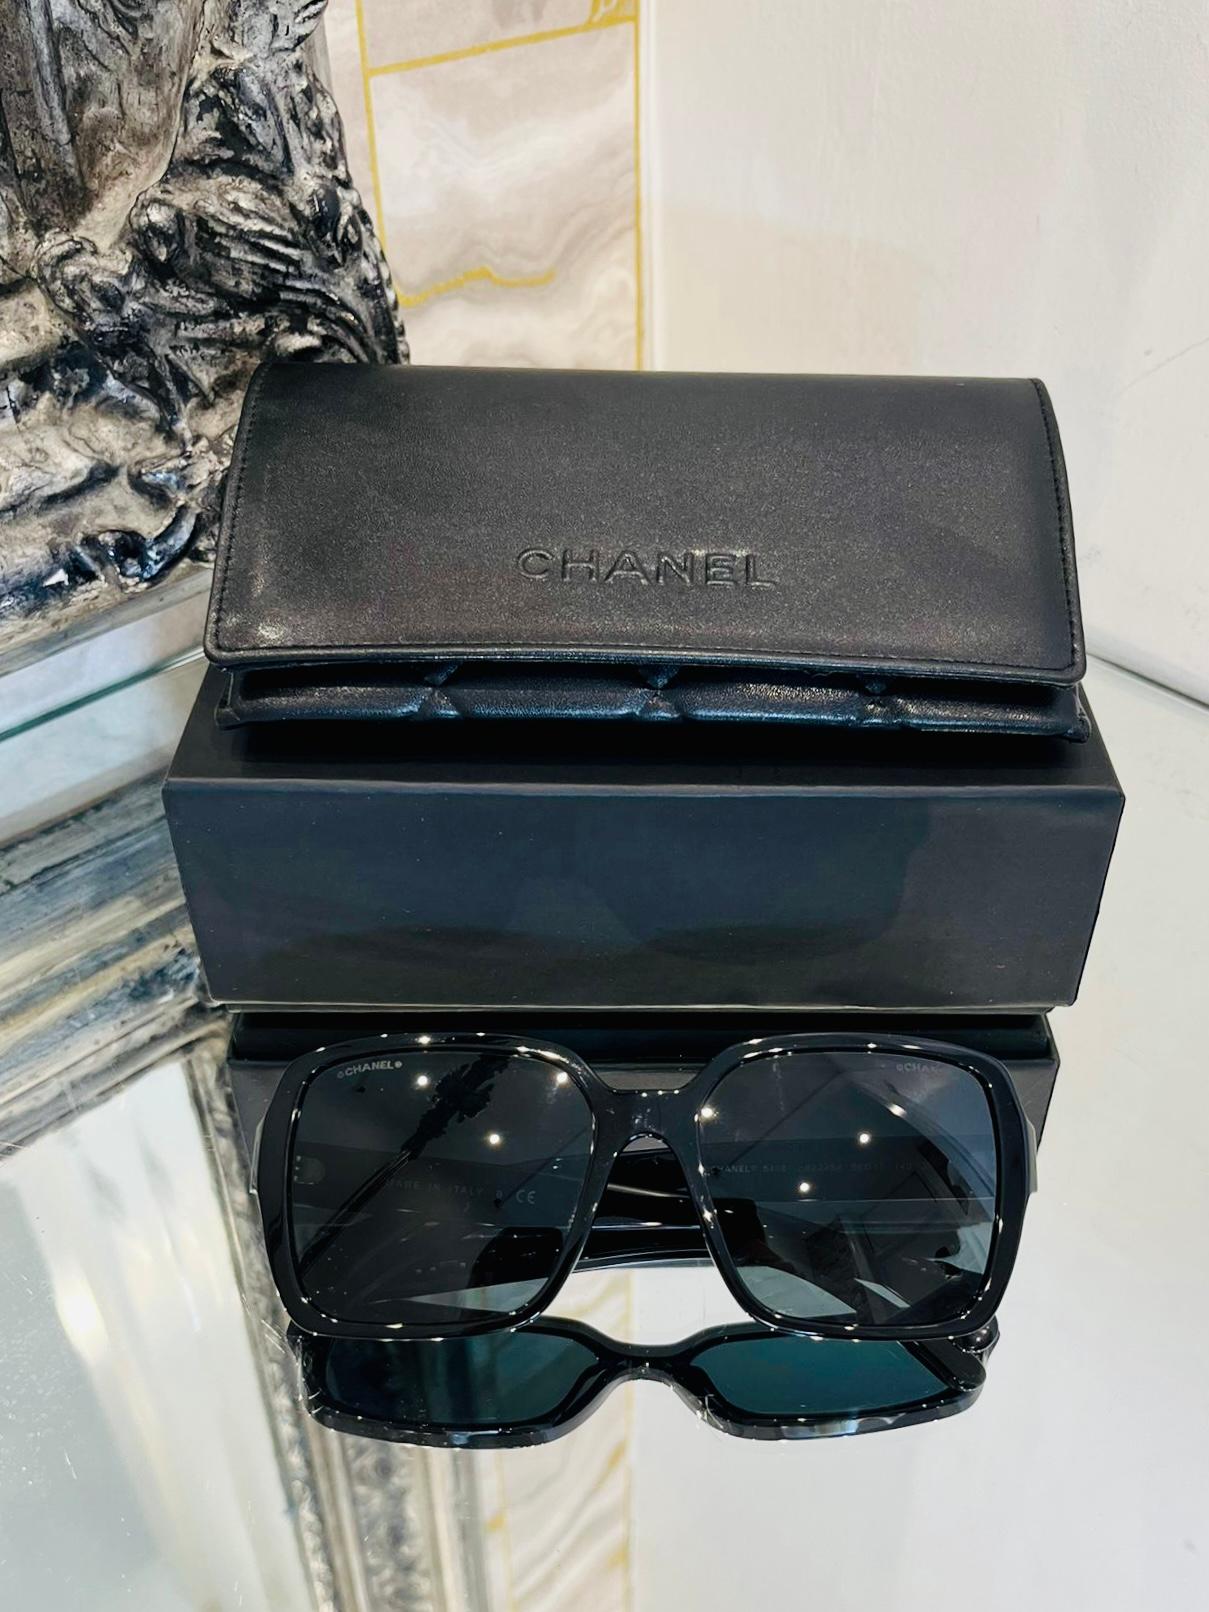 Chanel Logo-Sonnenbrille „CHANEL“ 

Schwarzer Acetatrahmen mit goldenem 'CHANEL'-Schriftzug auf jedem Bügel.

Größe - Einheitsgröße

Zustand - Sehr gut

Zusammensetzung - Kunststoff

Kommt mit - Branded Inner & Outer Box